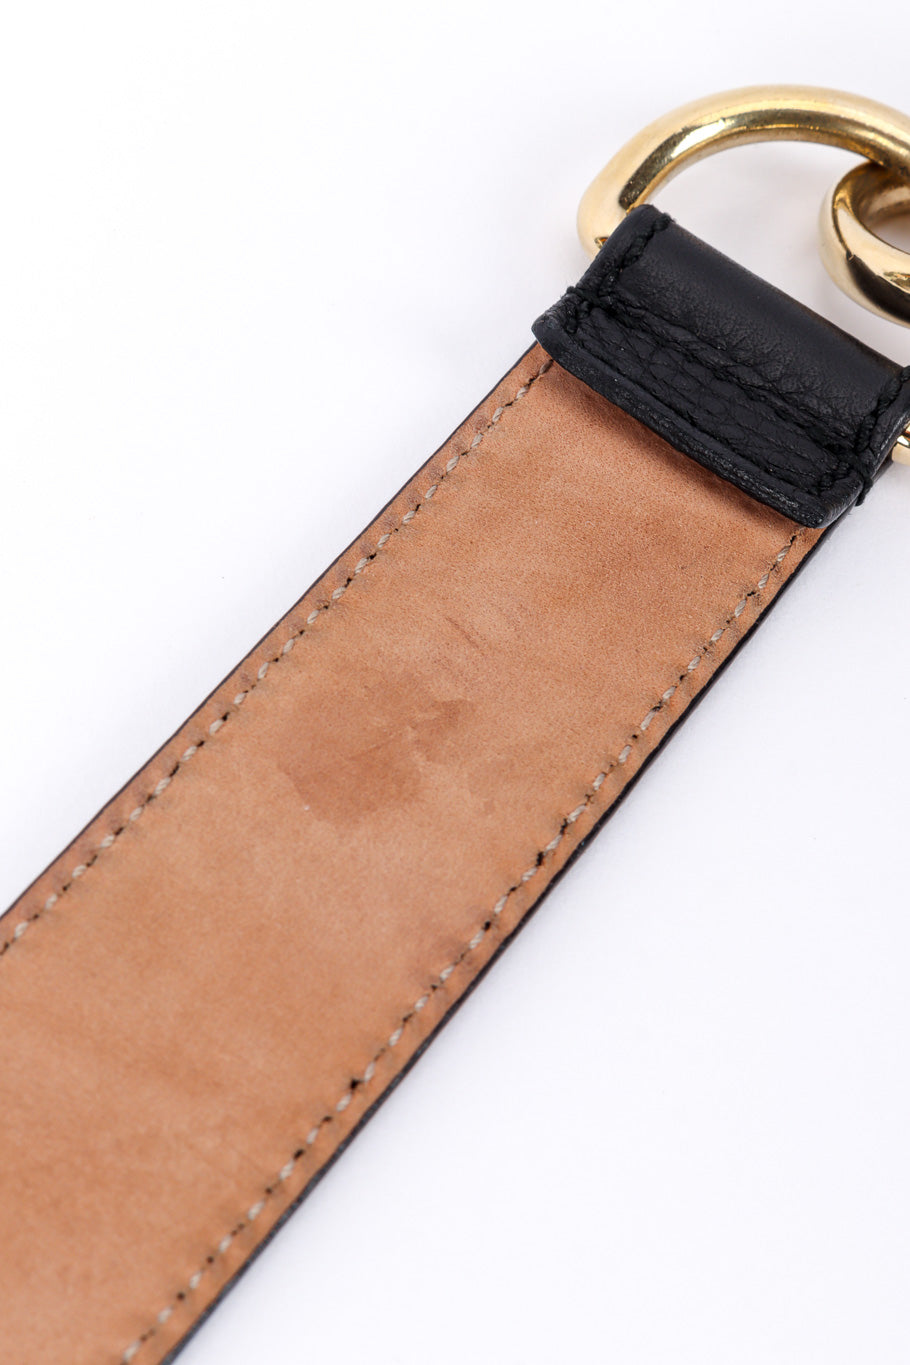 Gucci Horsebit Tassel Belt back closeup @recessla